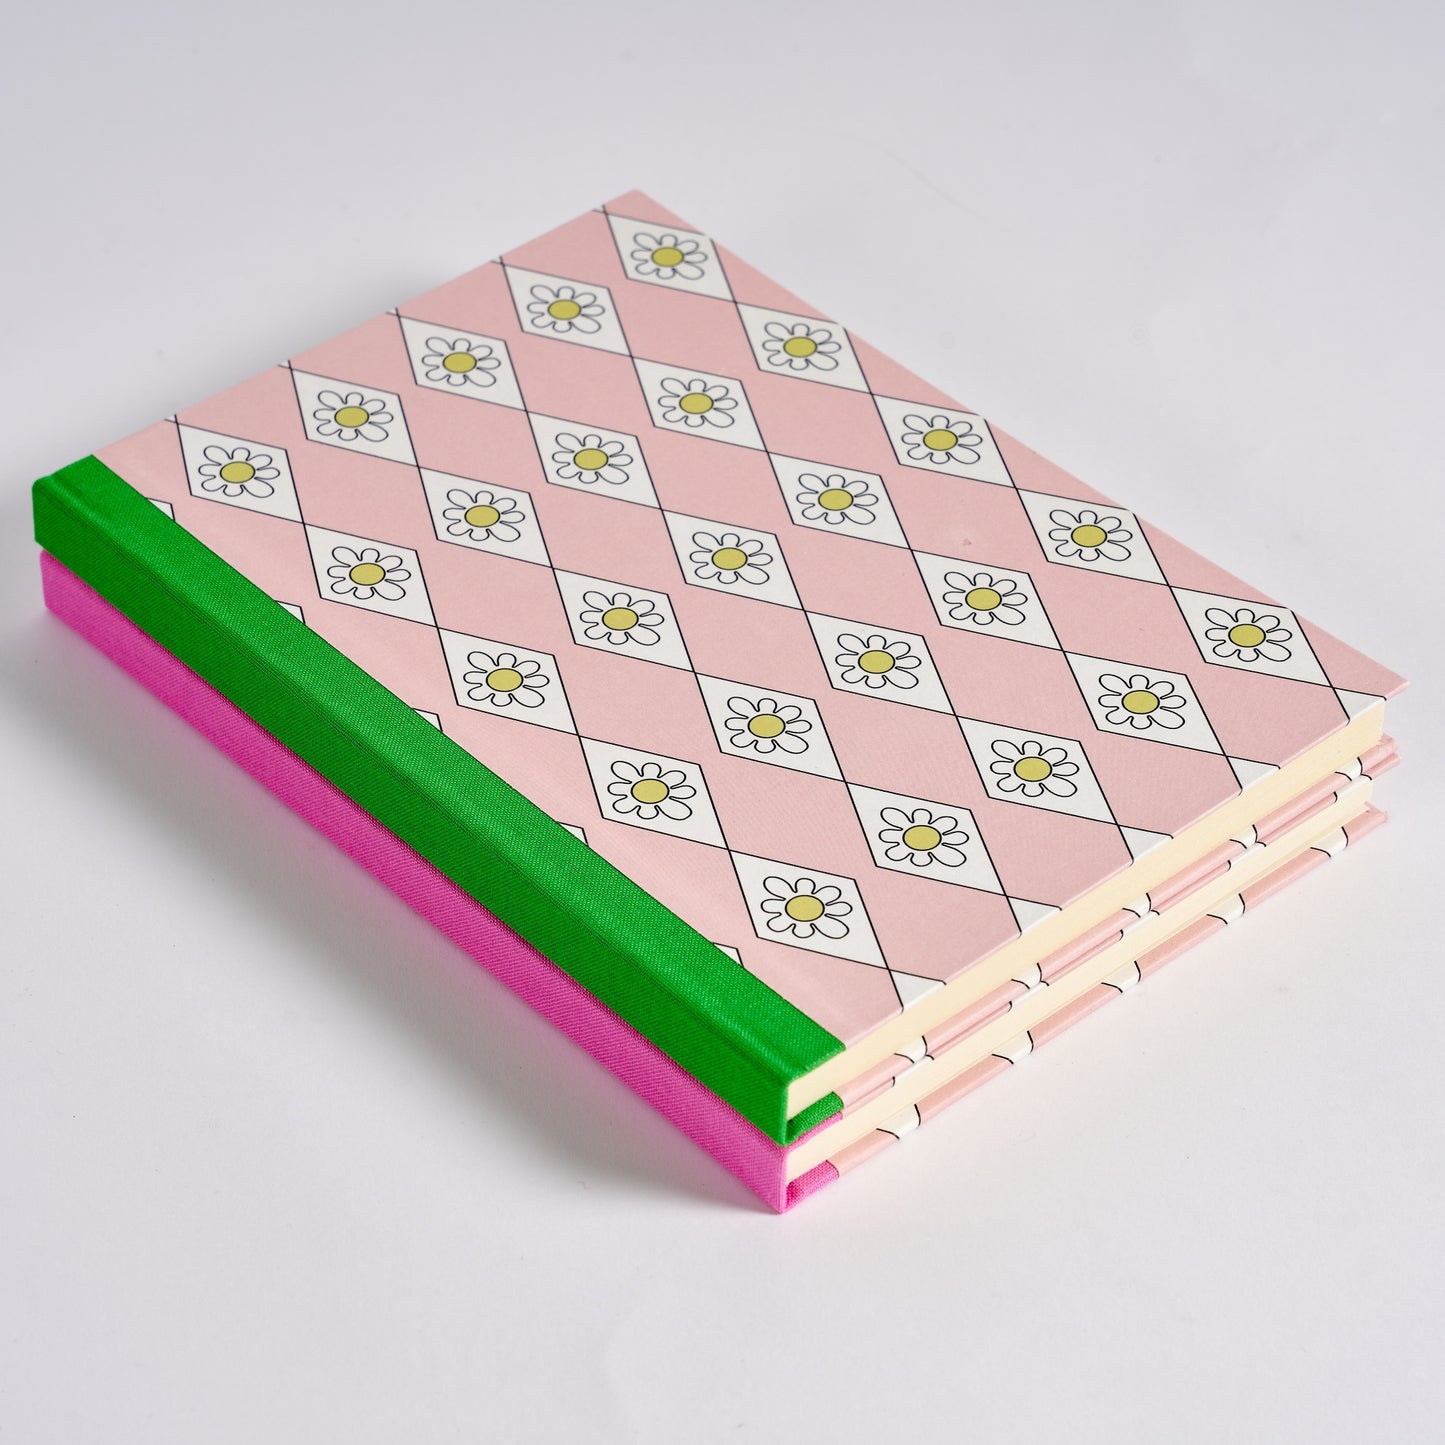 A5 Hardcover Notebook Pink Diamond Daisy - Green Grass